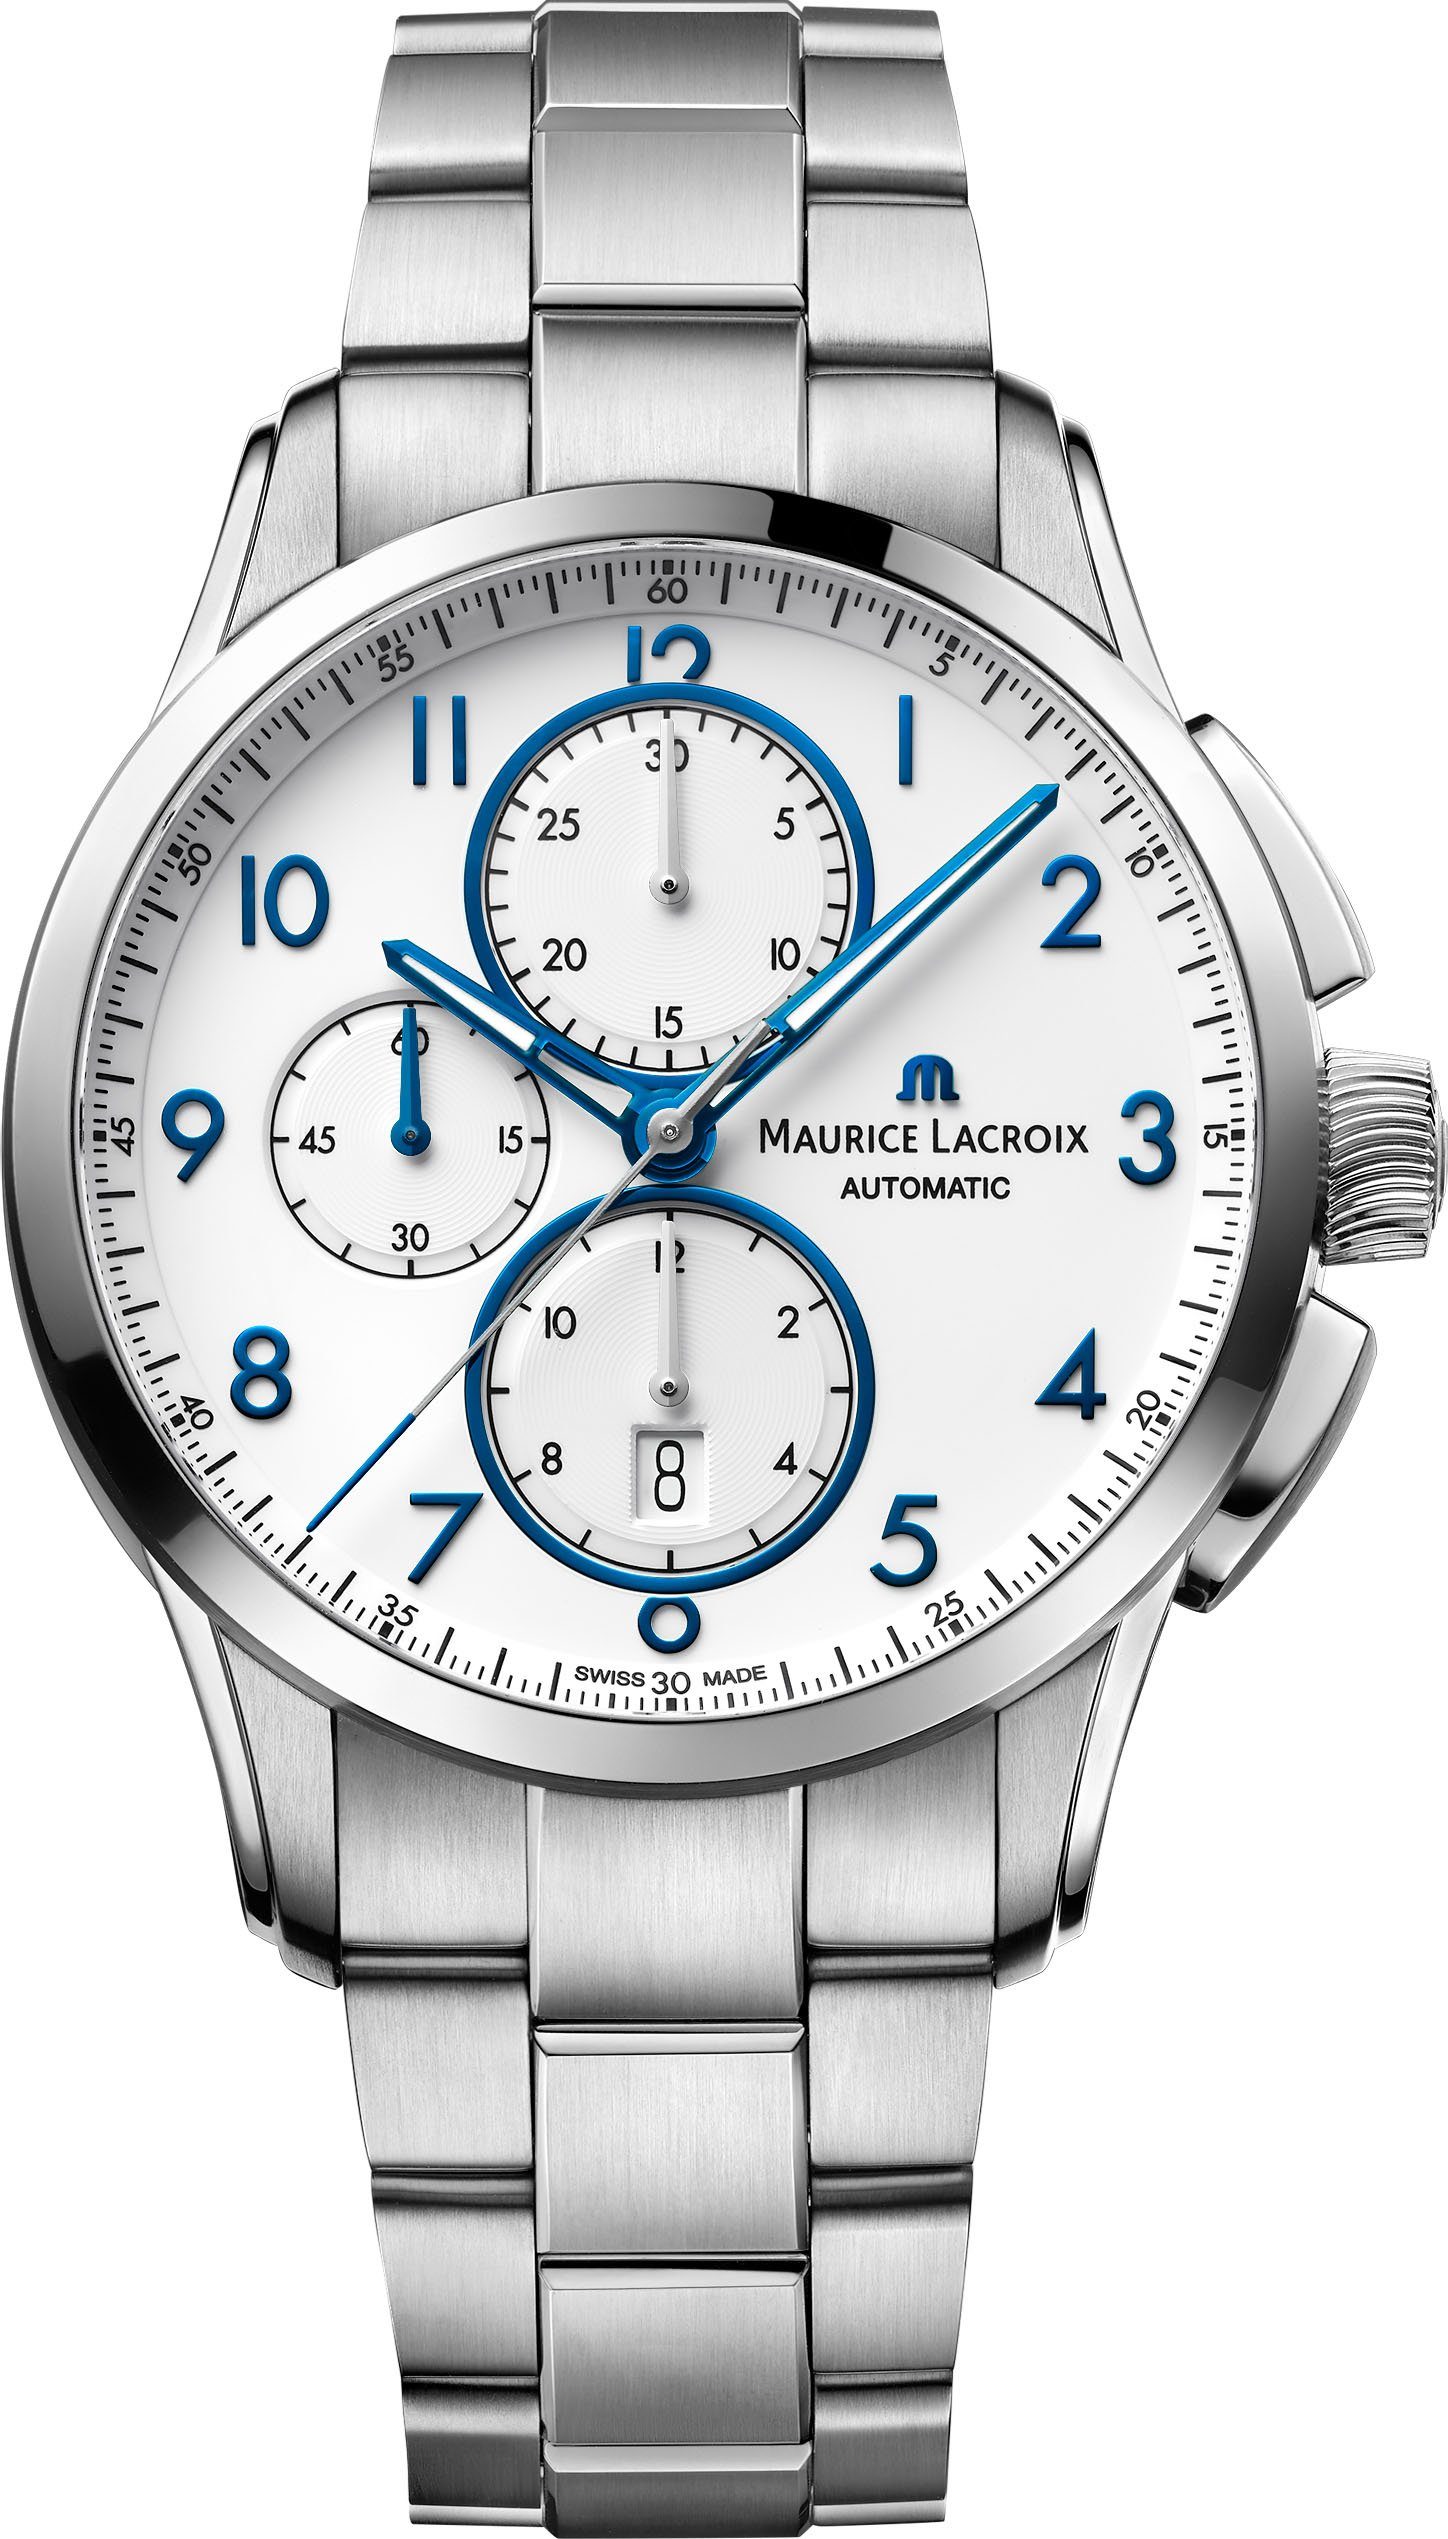 MAURICE LACROIX Chronograph Pontos Chronograph Date, PT6388-SS002-120-1, Automatik | Schweizer Uhren